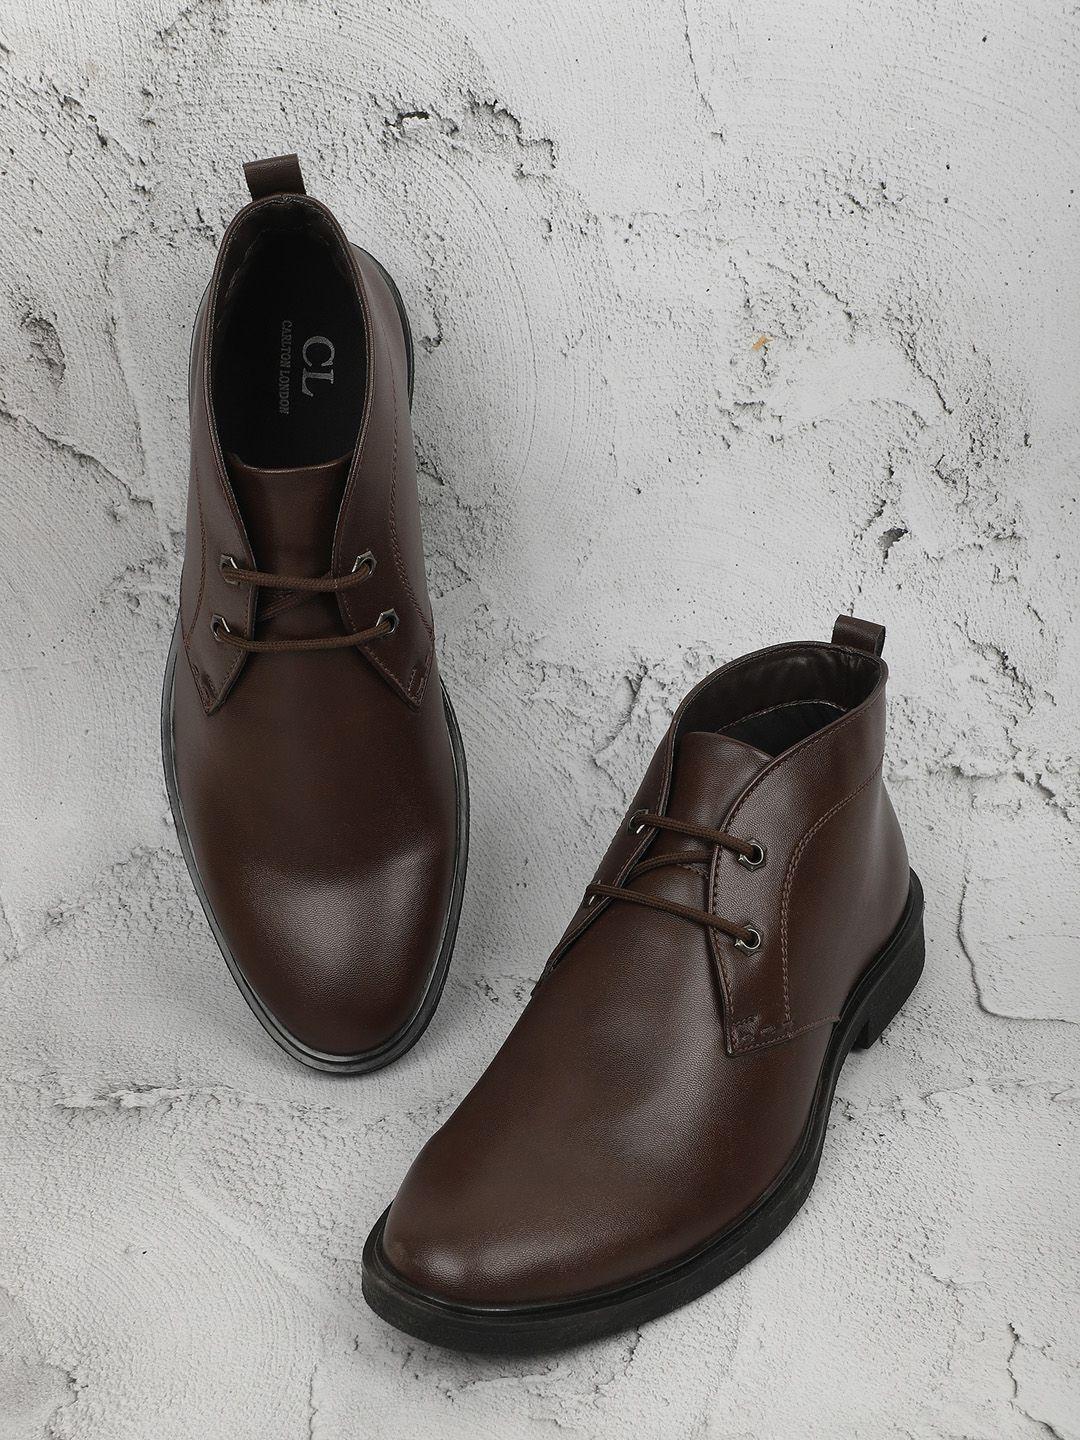 carlton london men brown boots